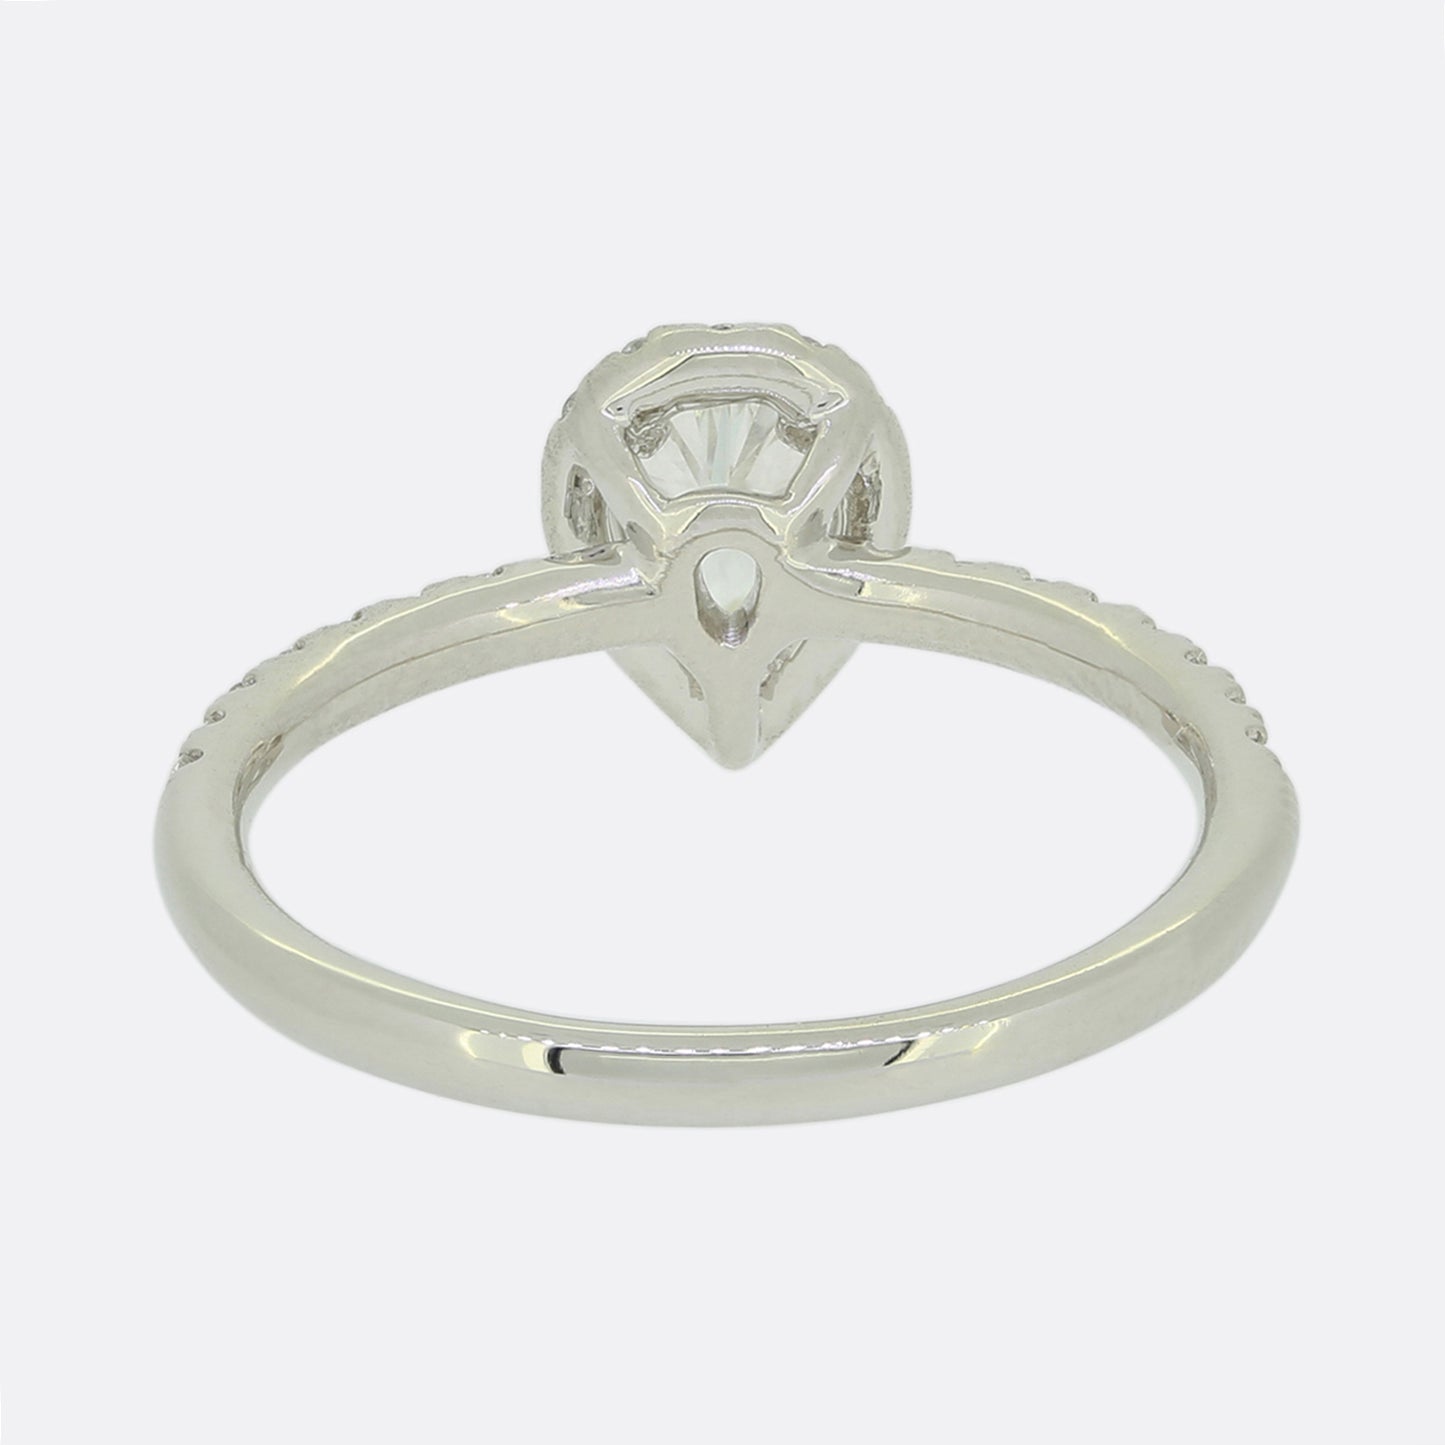 0.48 Carat Pear Cut Diamond Ring